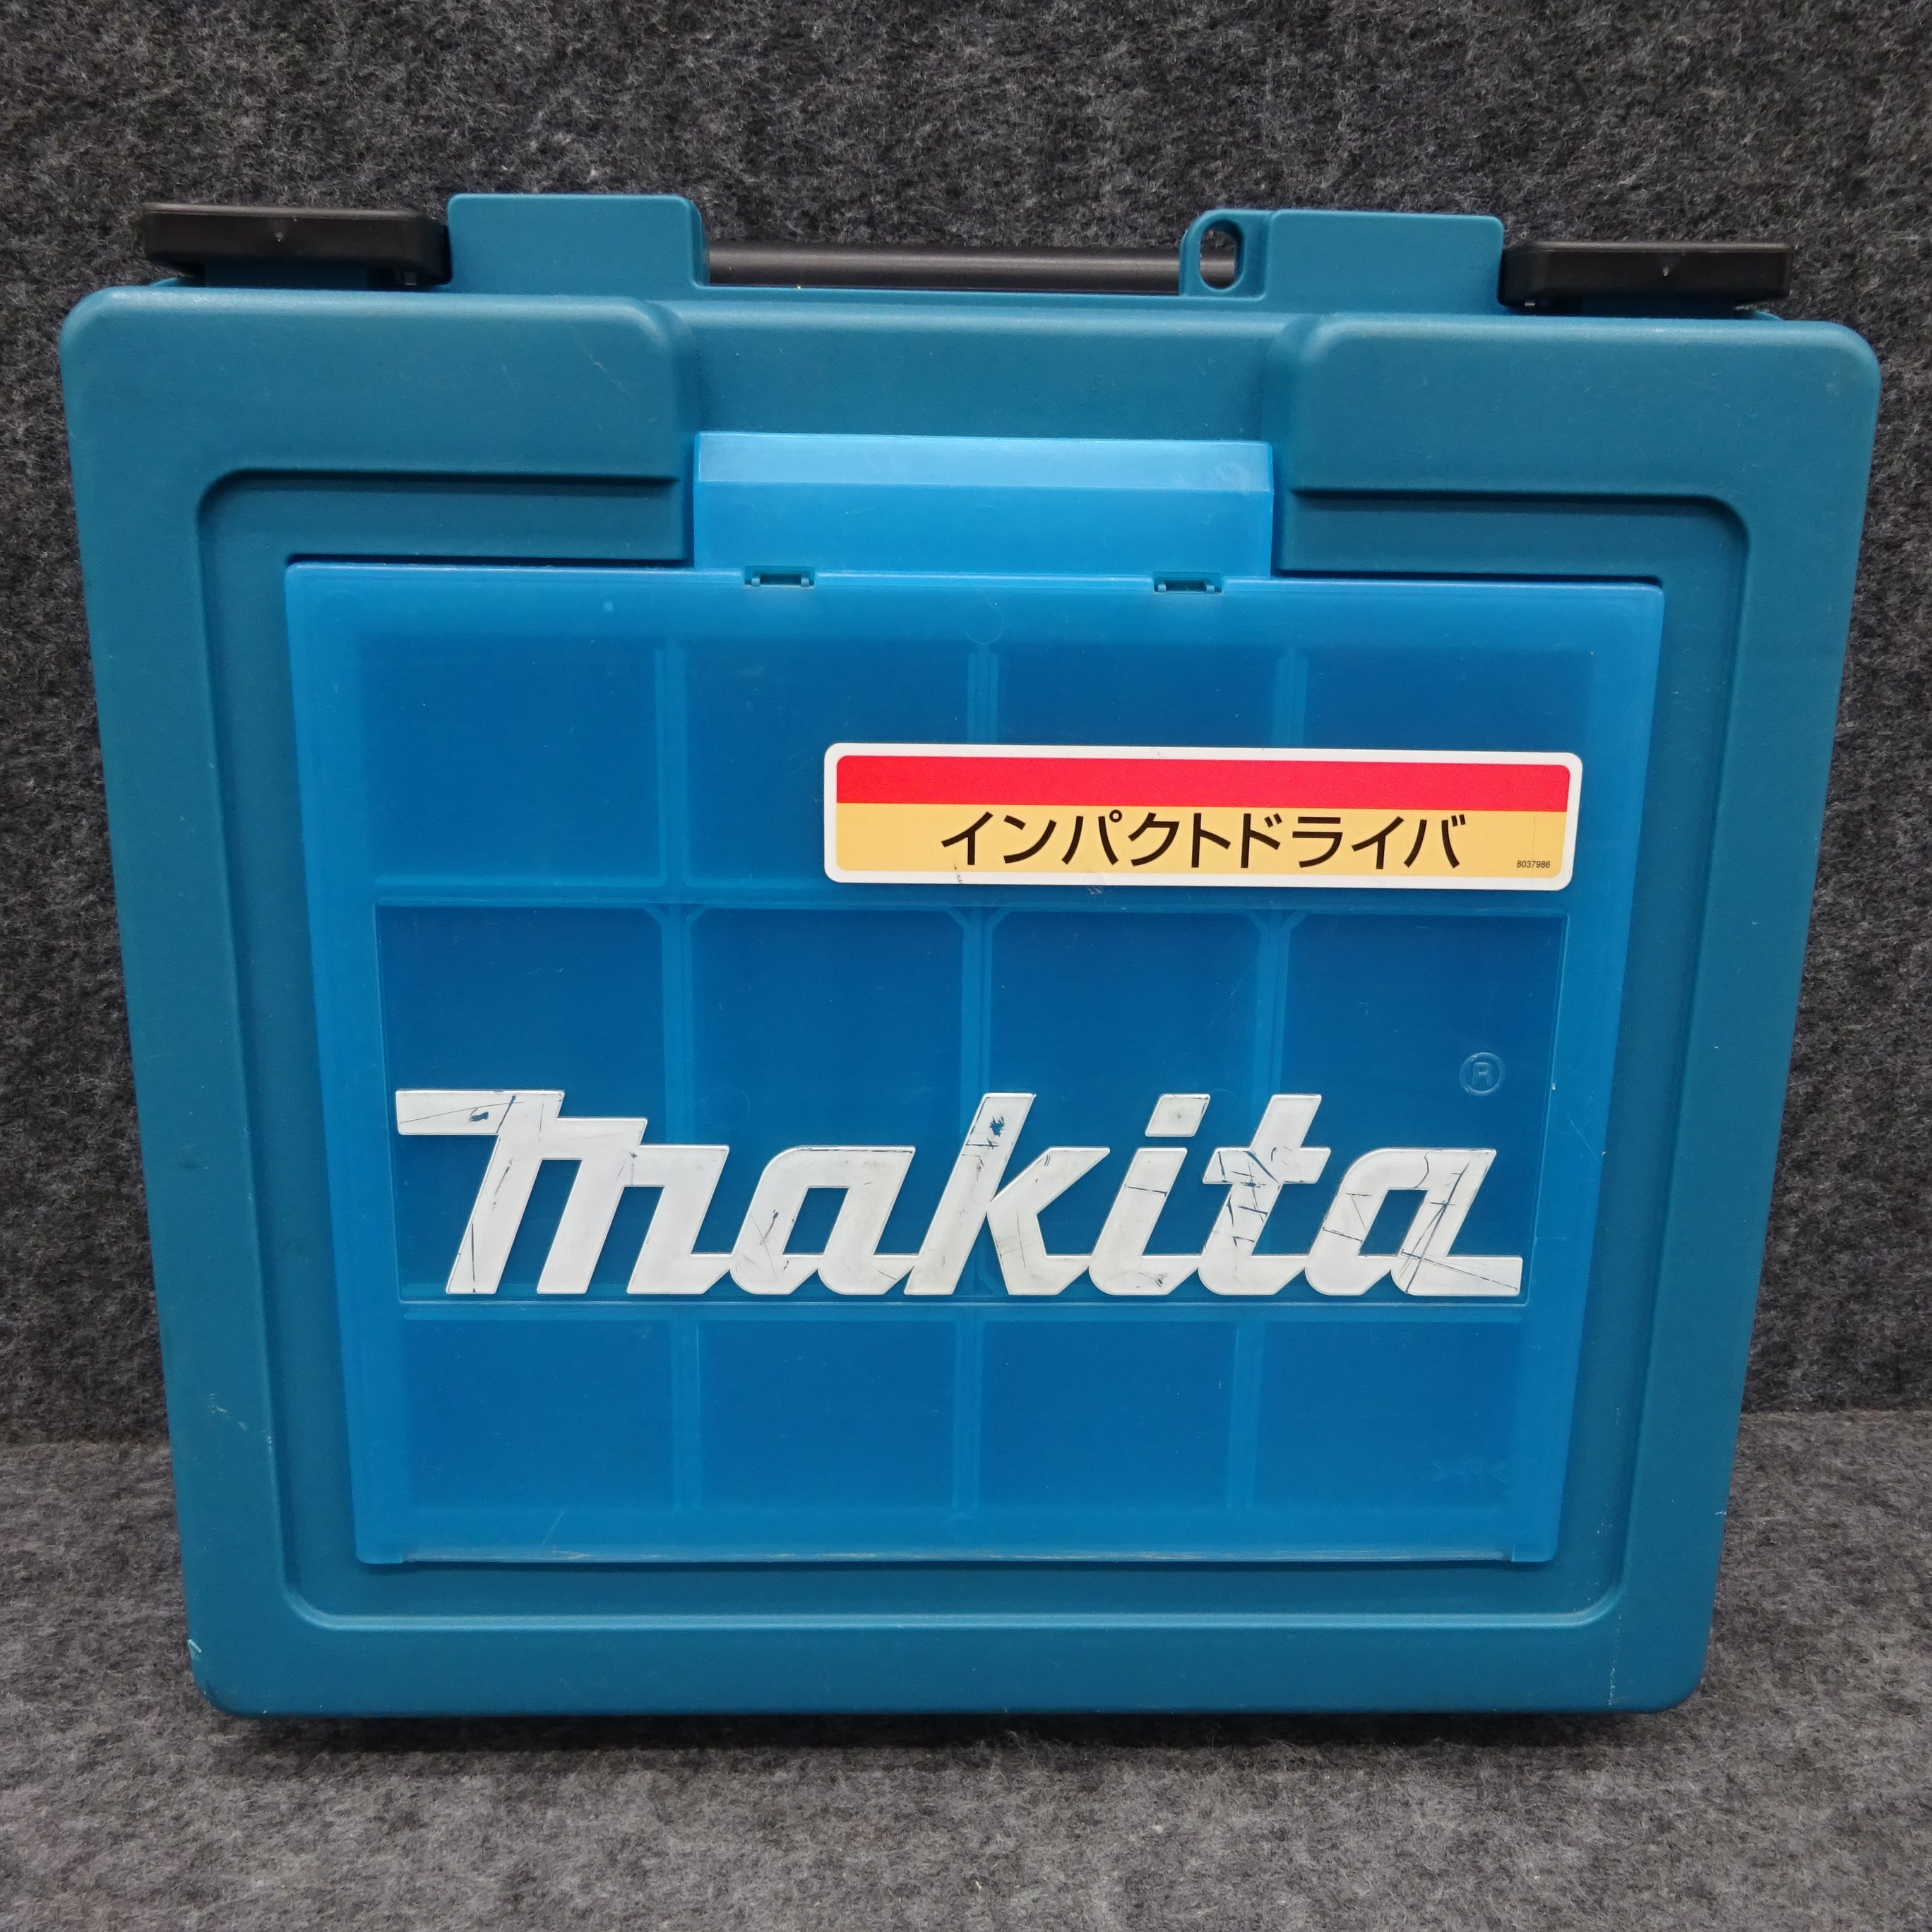 ☆マキタ(makita) インパクトドライバー 6955SPK【桶川店】 アクトツールオンラインショップ